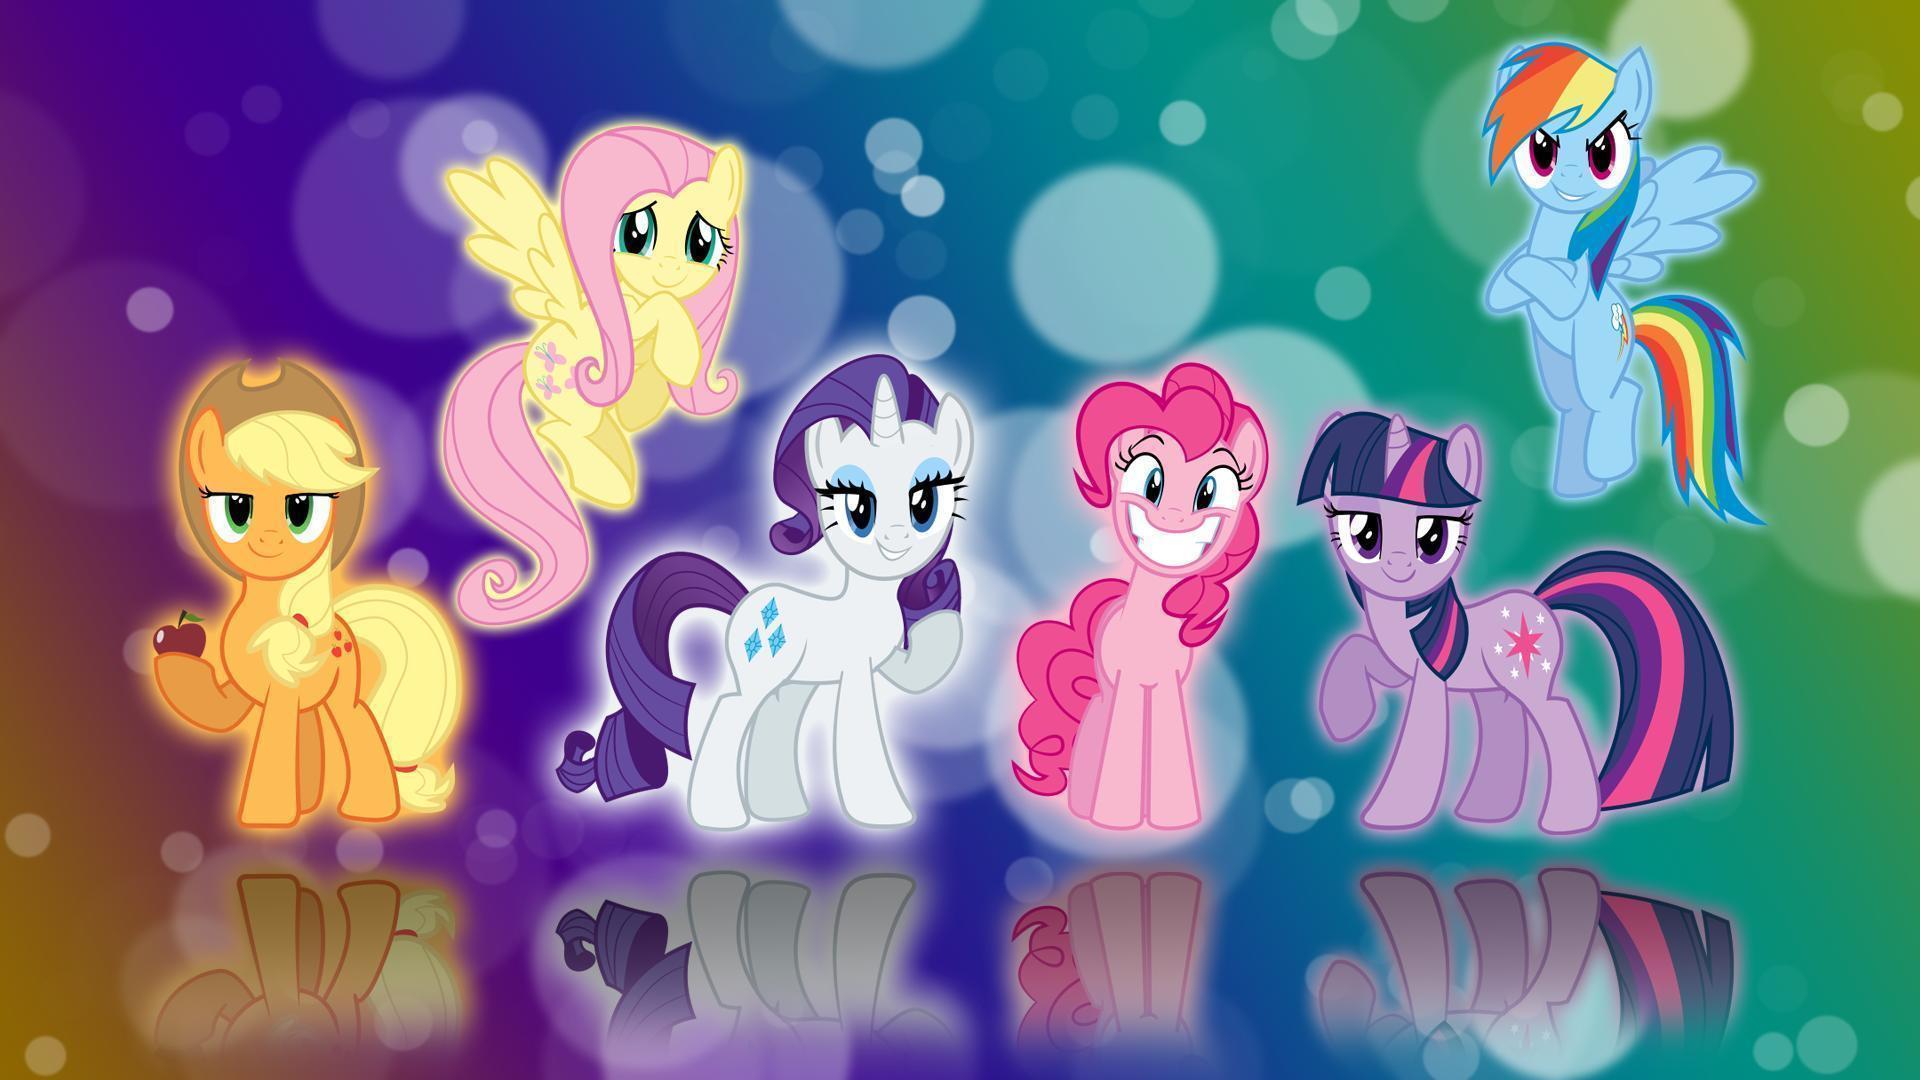 Wallpaper de My little pony: Friendship is Magic!